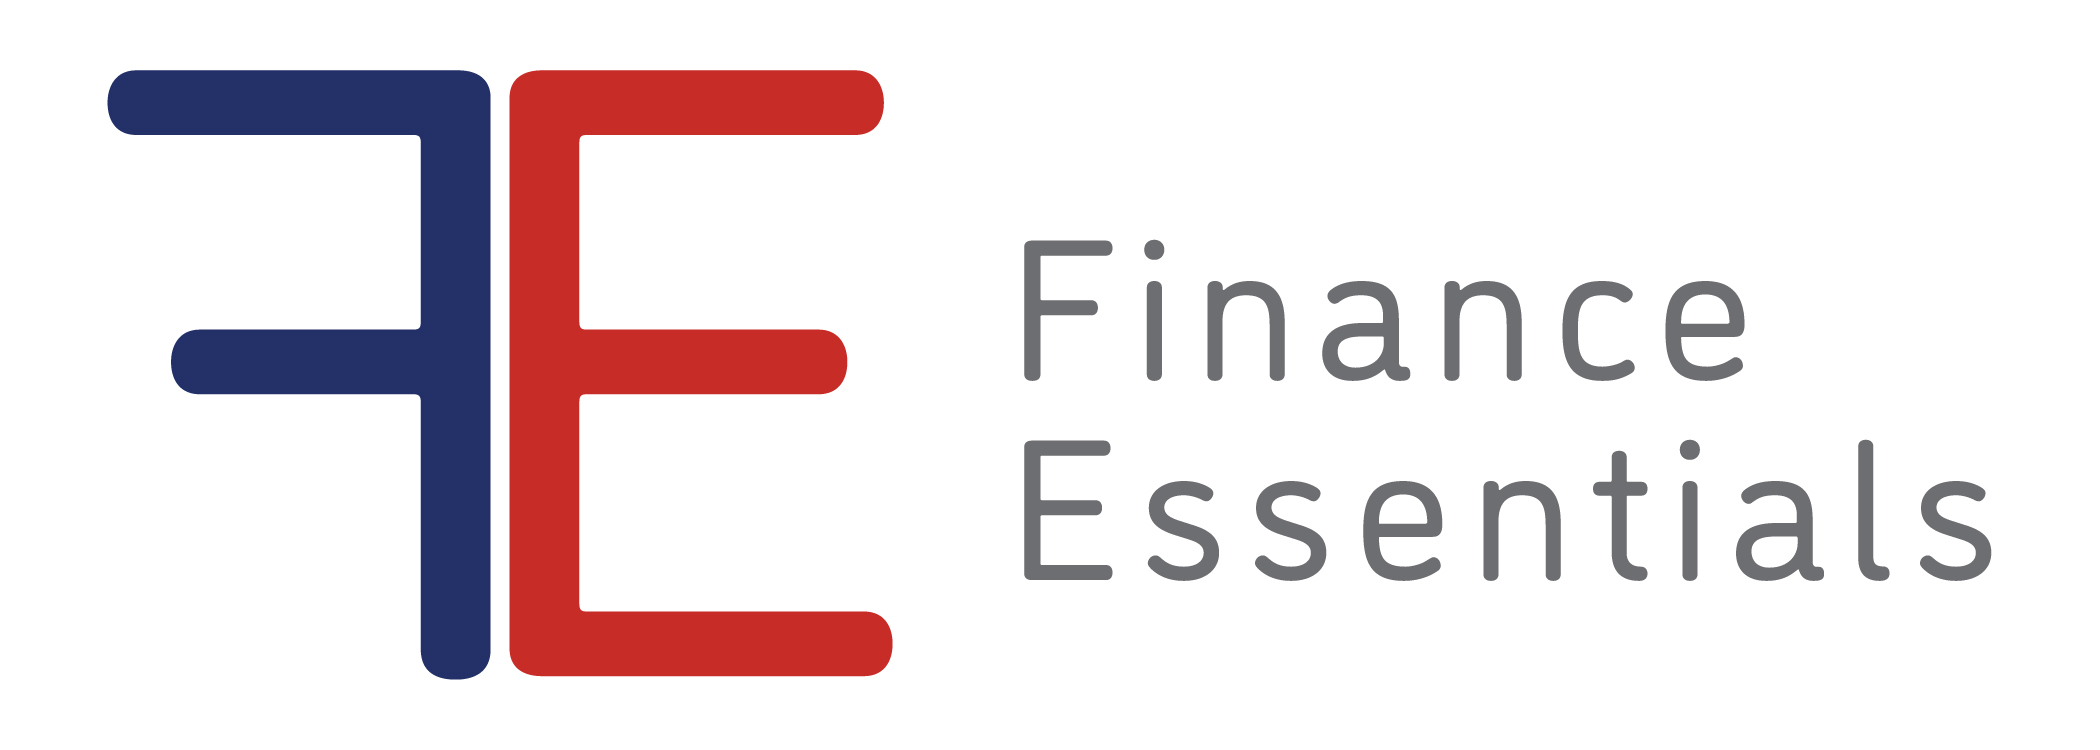 Finance Essentials logo